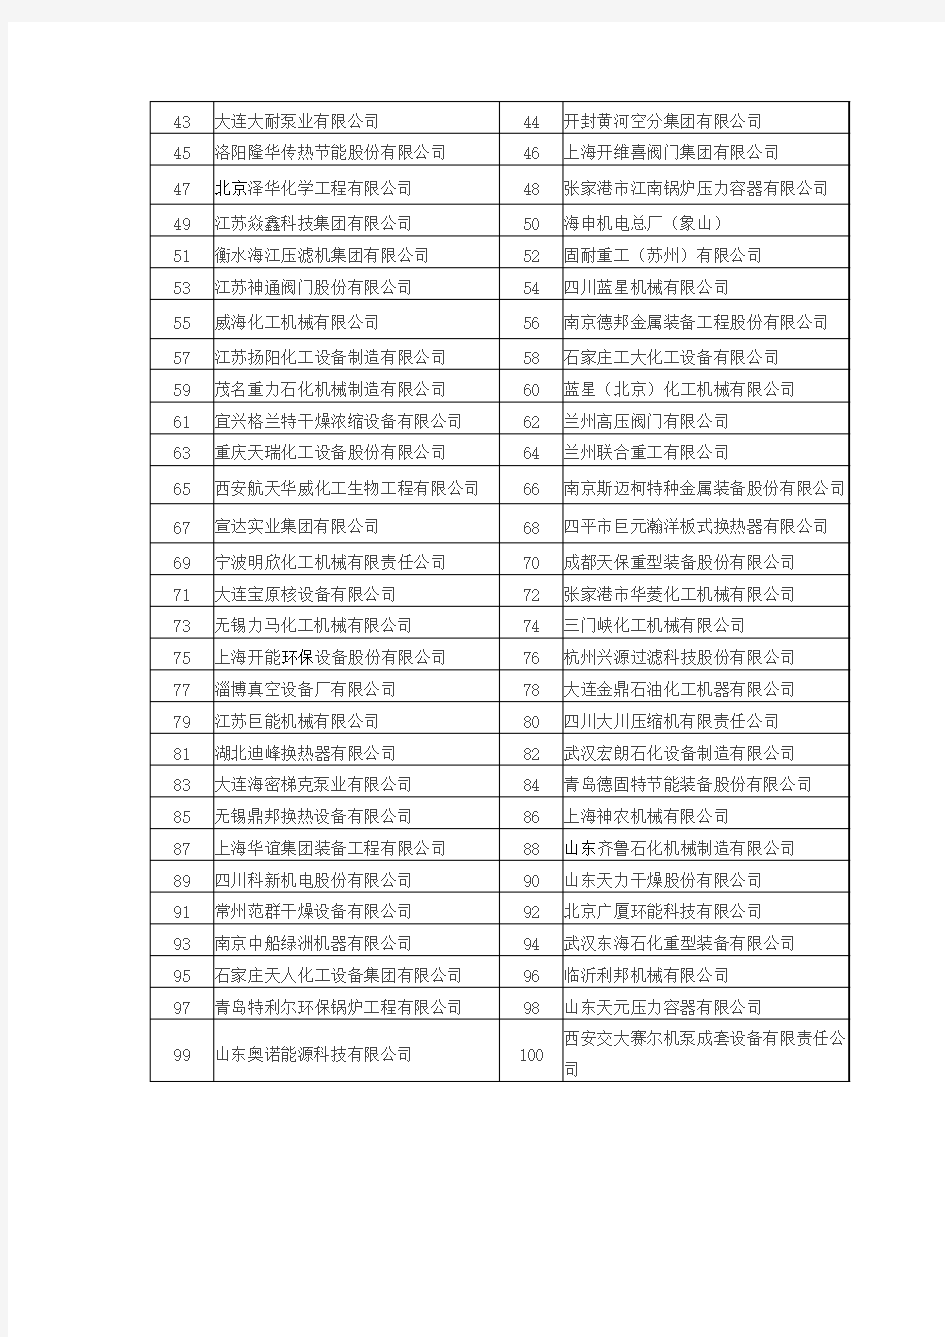 2014中国化工装备百强企业名单